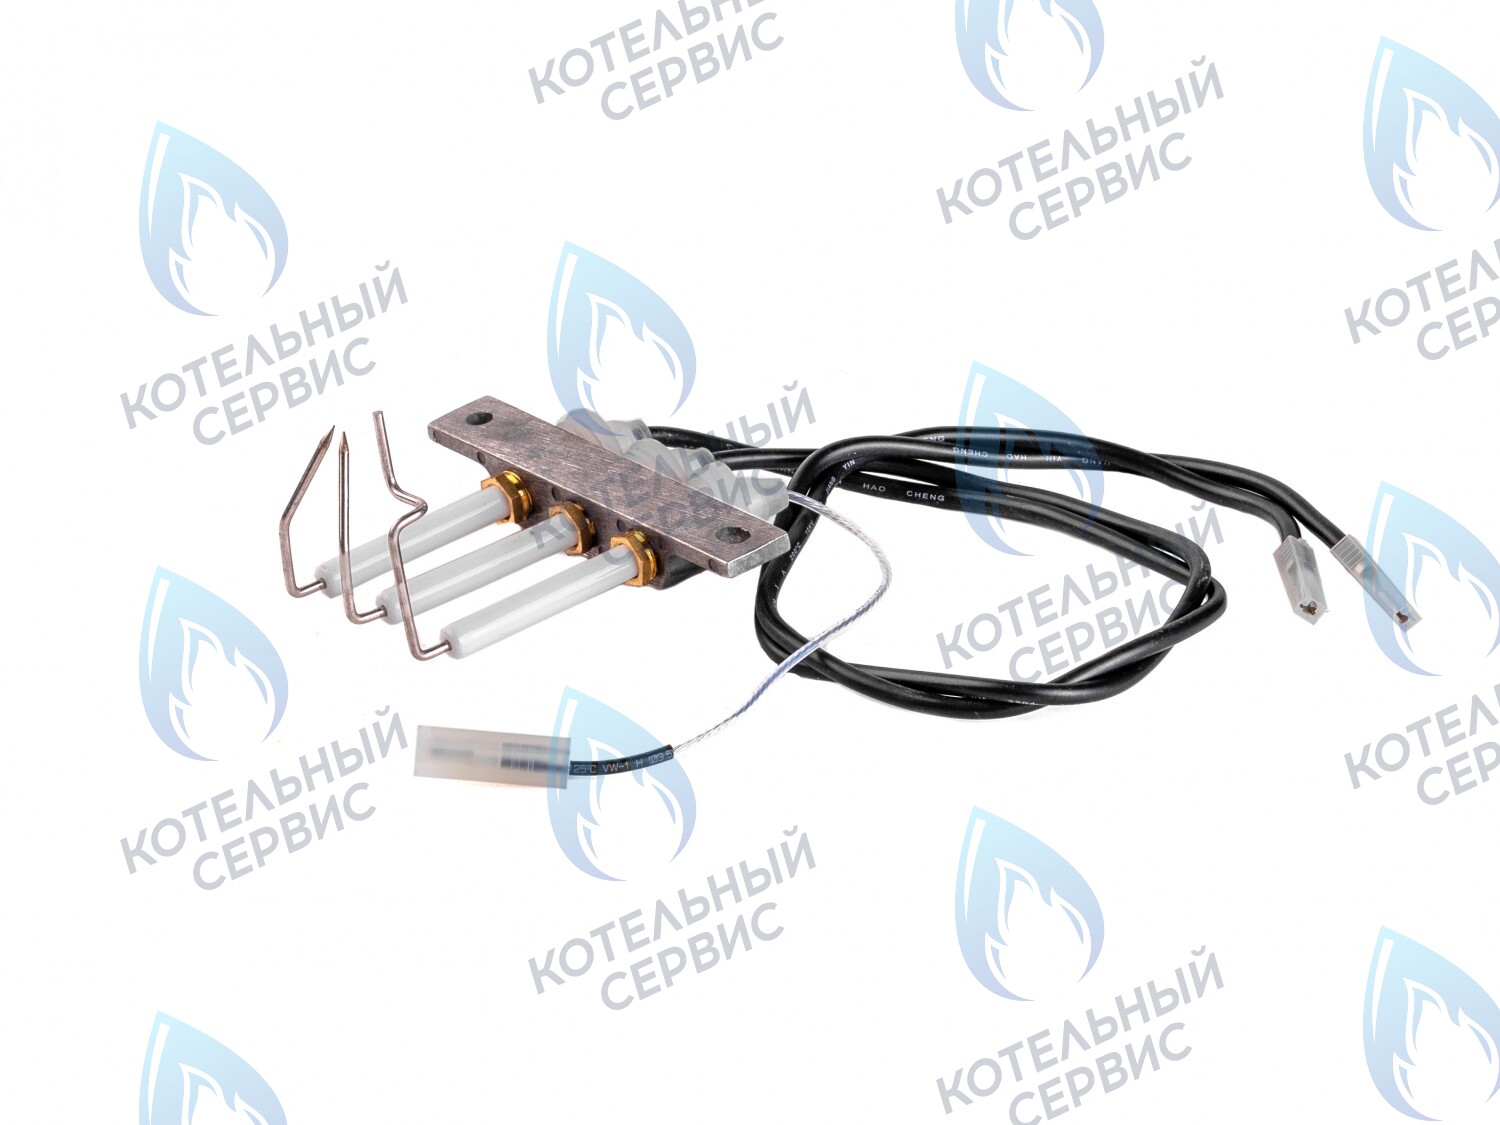  SF Комплект электродов с кабелями, электроды розжига и ионизации  (для GAZLUX, произведенных до 2012 г.) в Москве